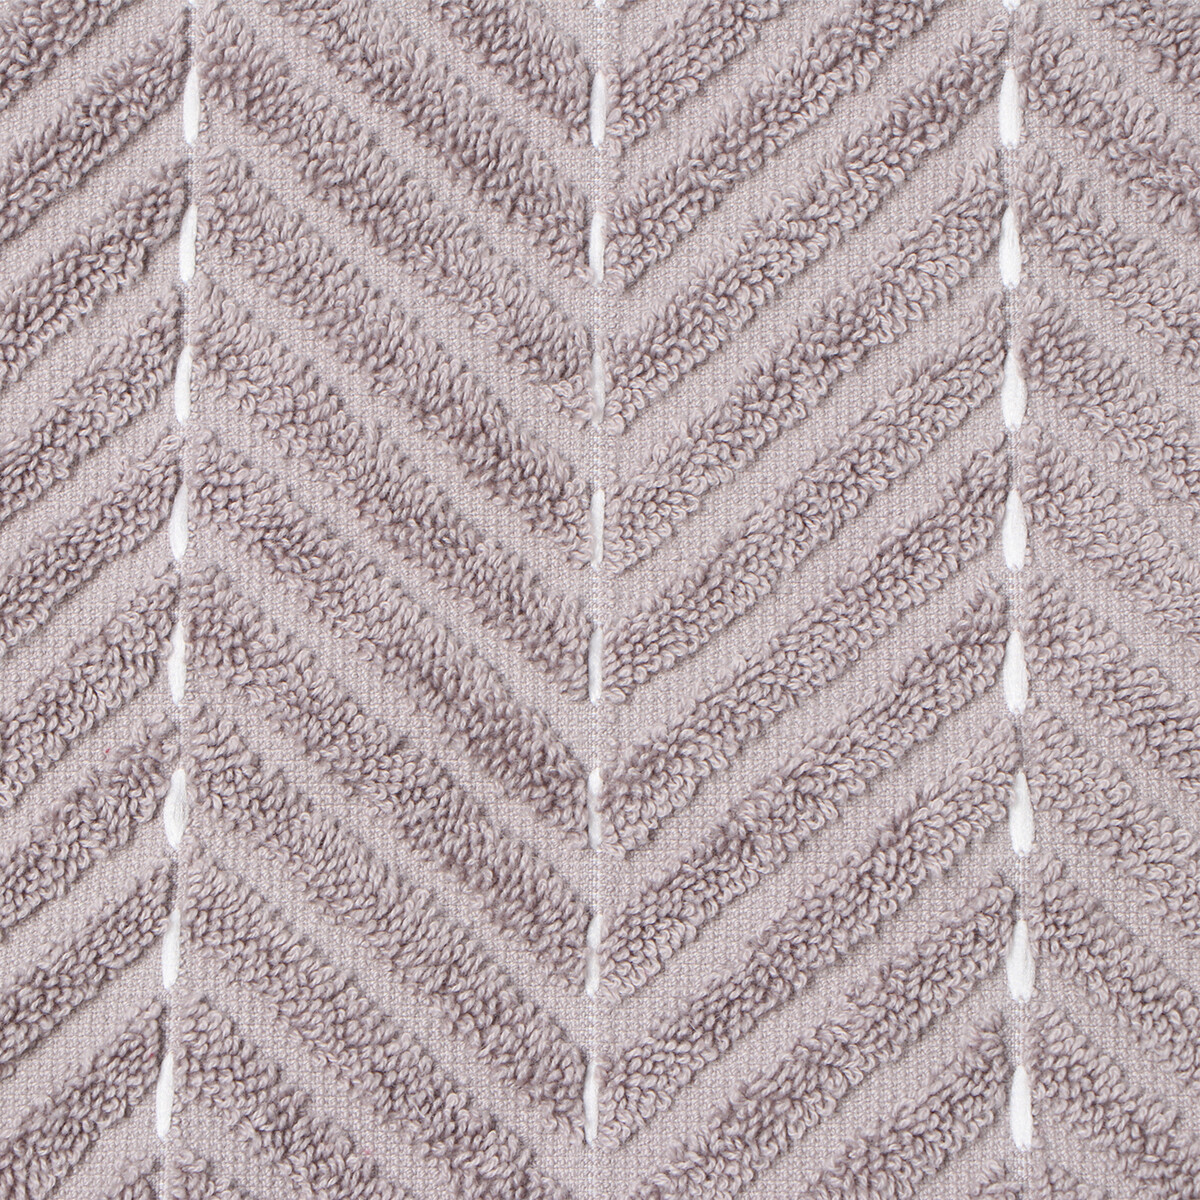 Коврик махровый этель lines, цв. светло-серый, 50х70 см, 100% хлопок, 750 г/м2 Этель, цвет белый 08324604 - фото 3